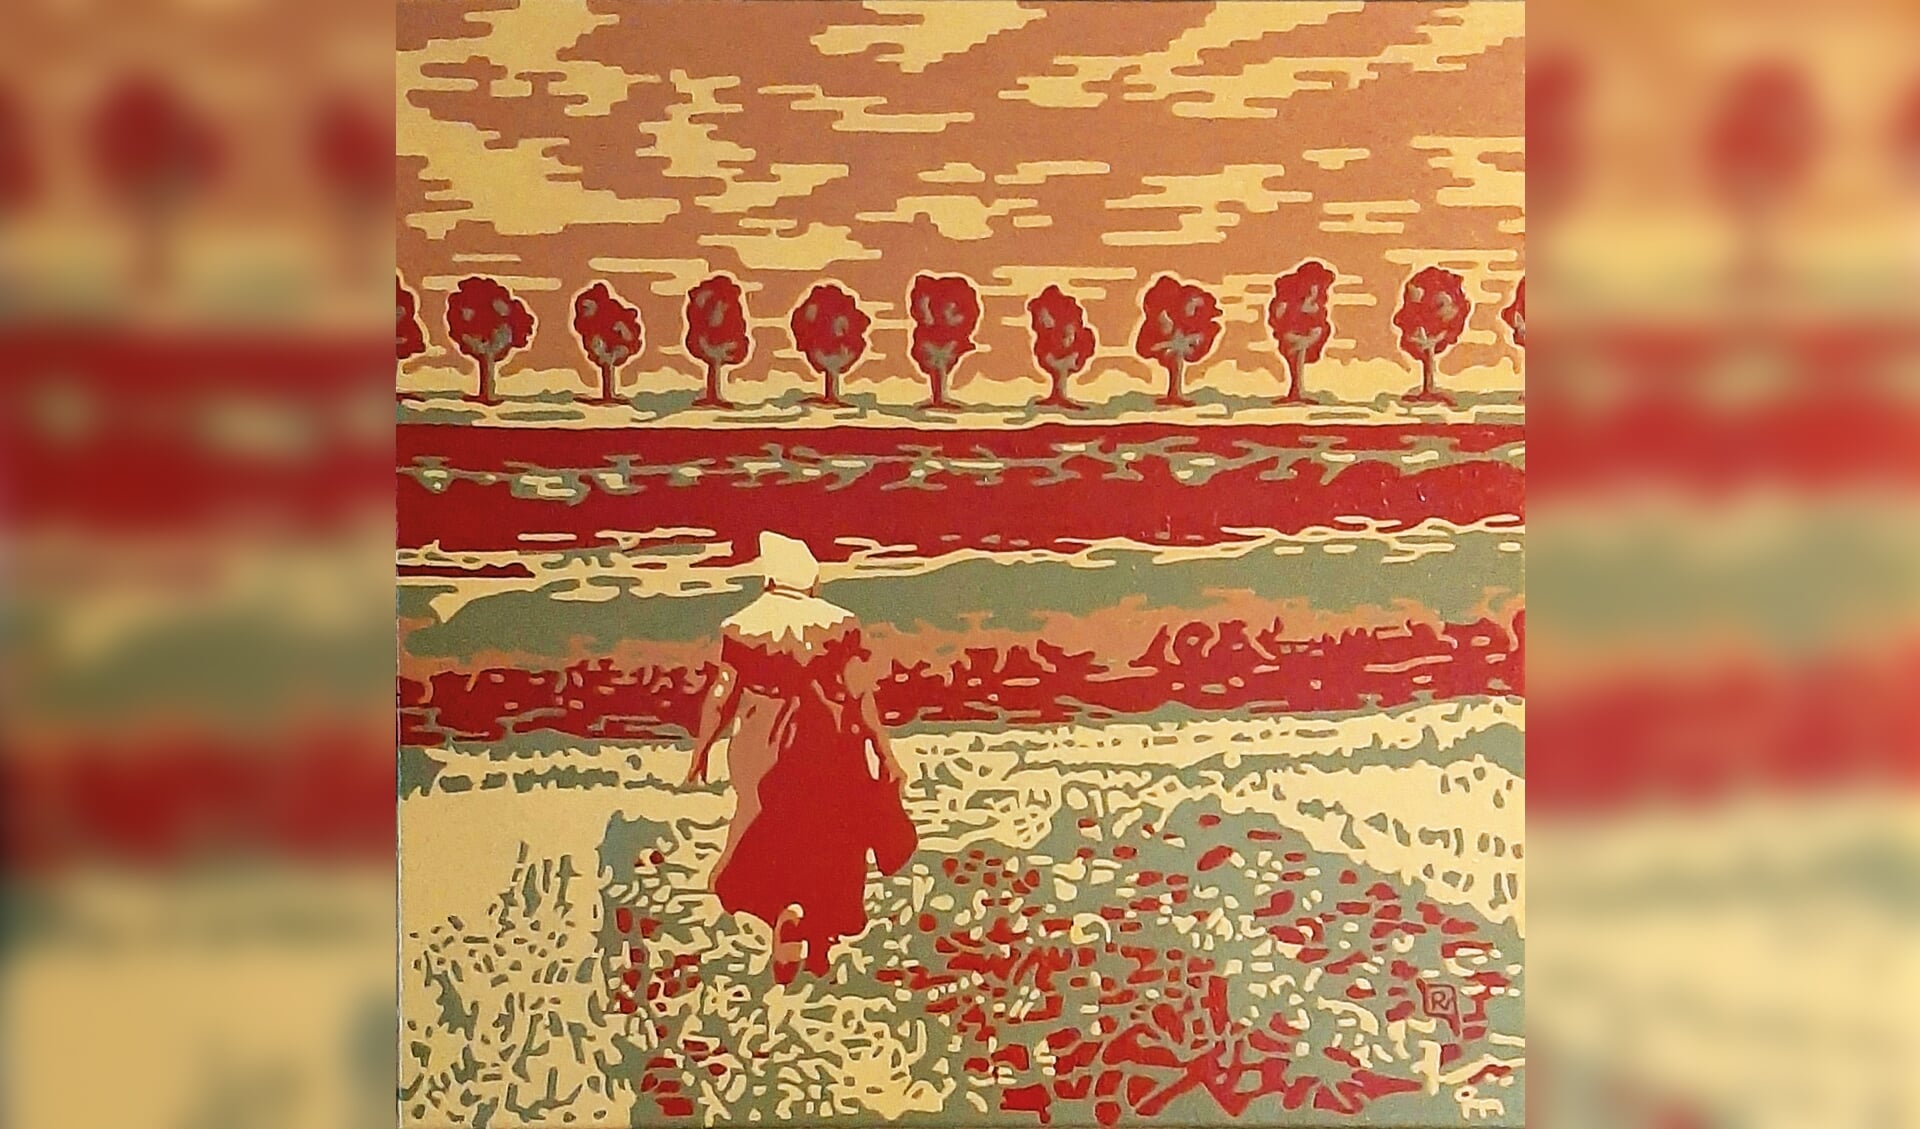 Boerin in de polder, schilderij van Riena Valkhoff.